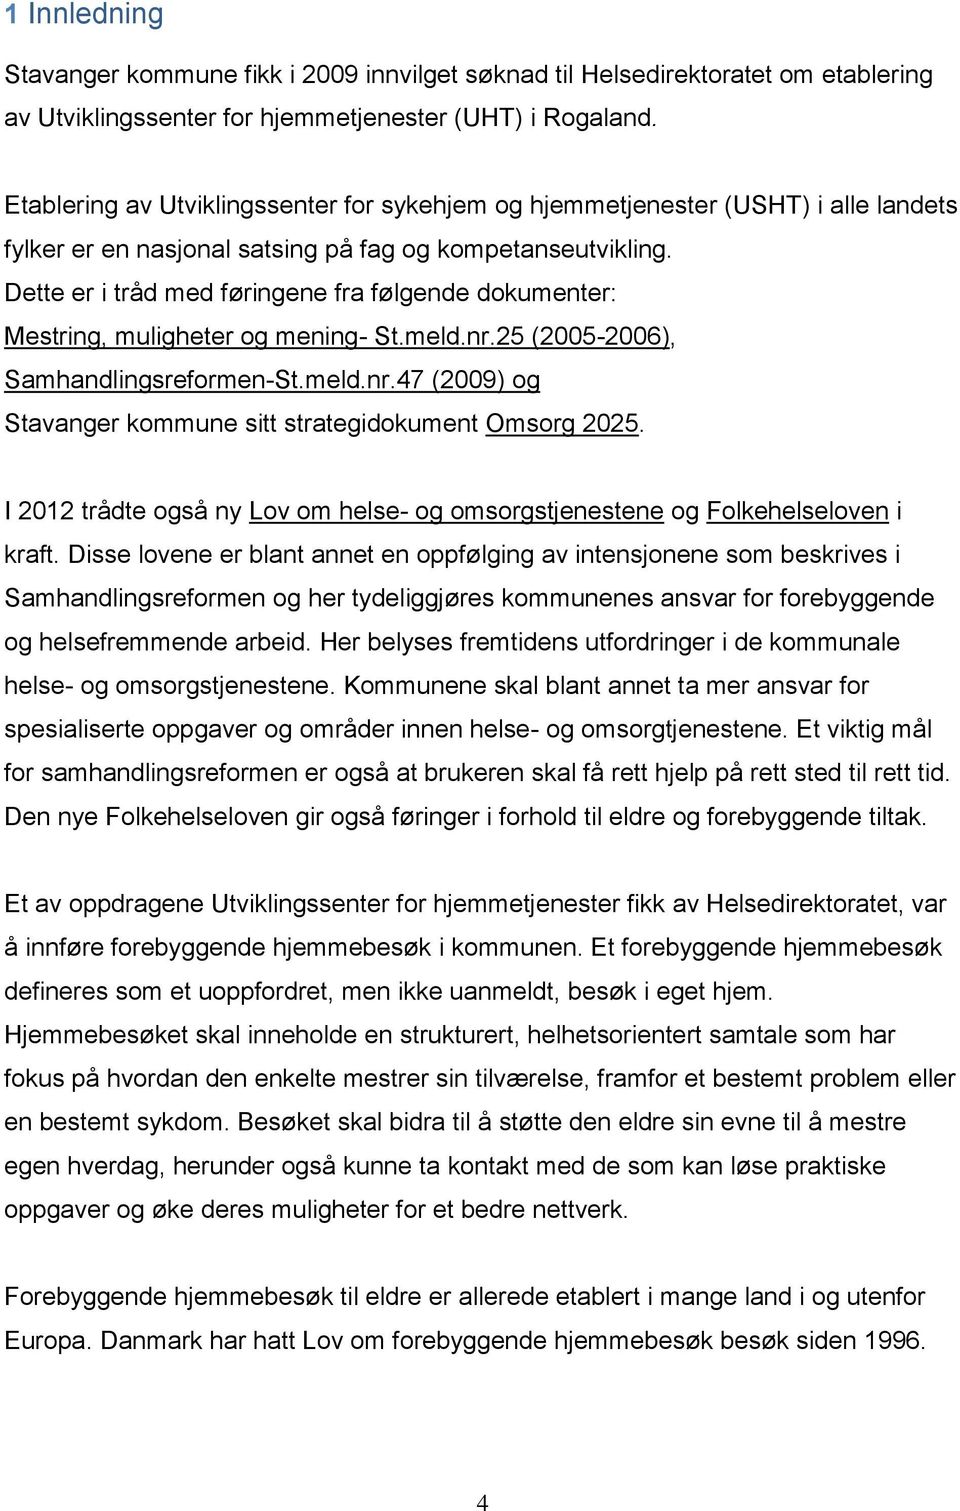 Dette er i tråd med føringene fra følgende dokumenter: Mestring, muligheter og mening- St.meld.nr.25 (2005-2006), Samhandlingsreformen-St.meld.nr.47 (2009) og Stavanger kommune sitt strategidokument Omsorg 2025.